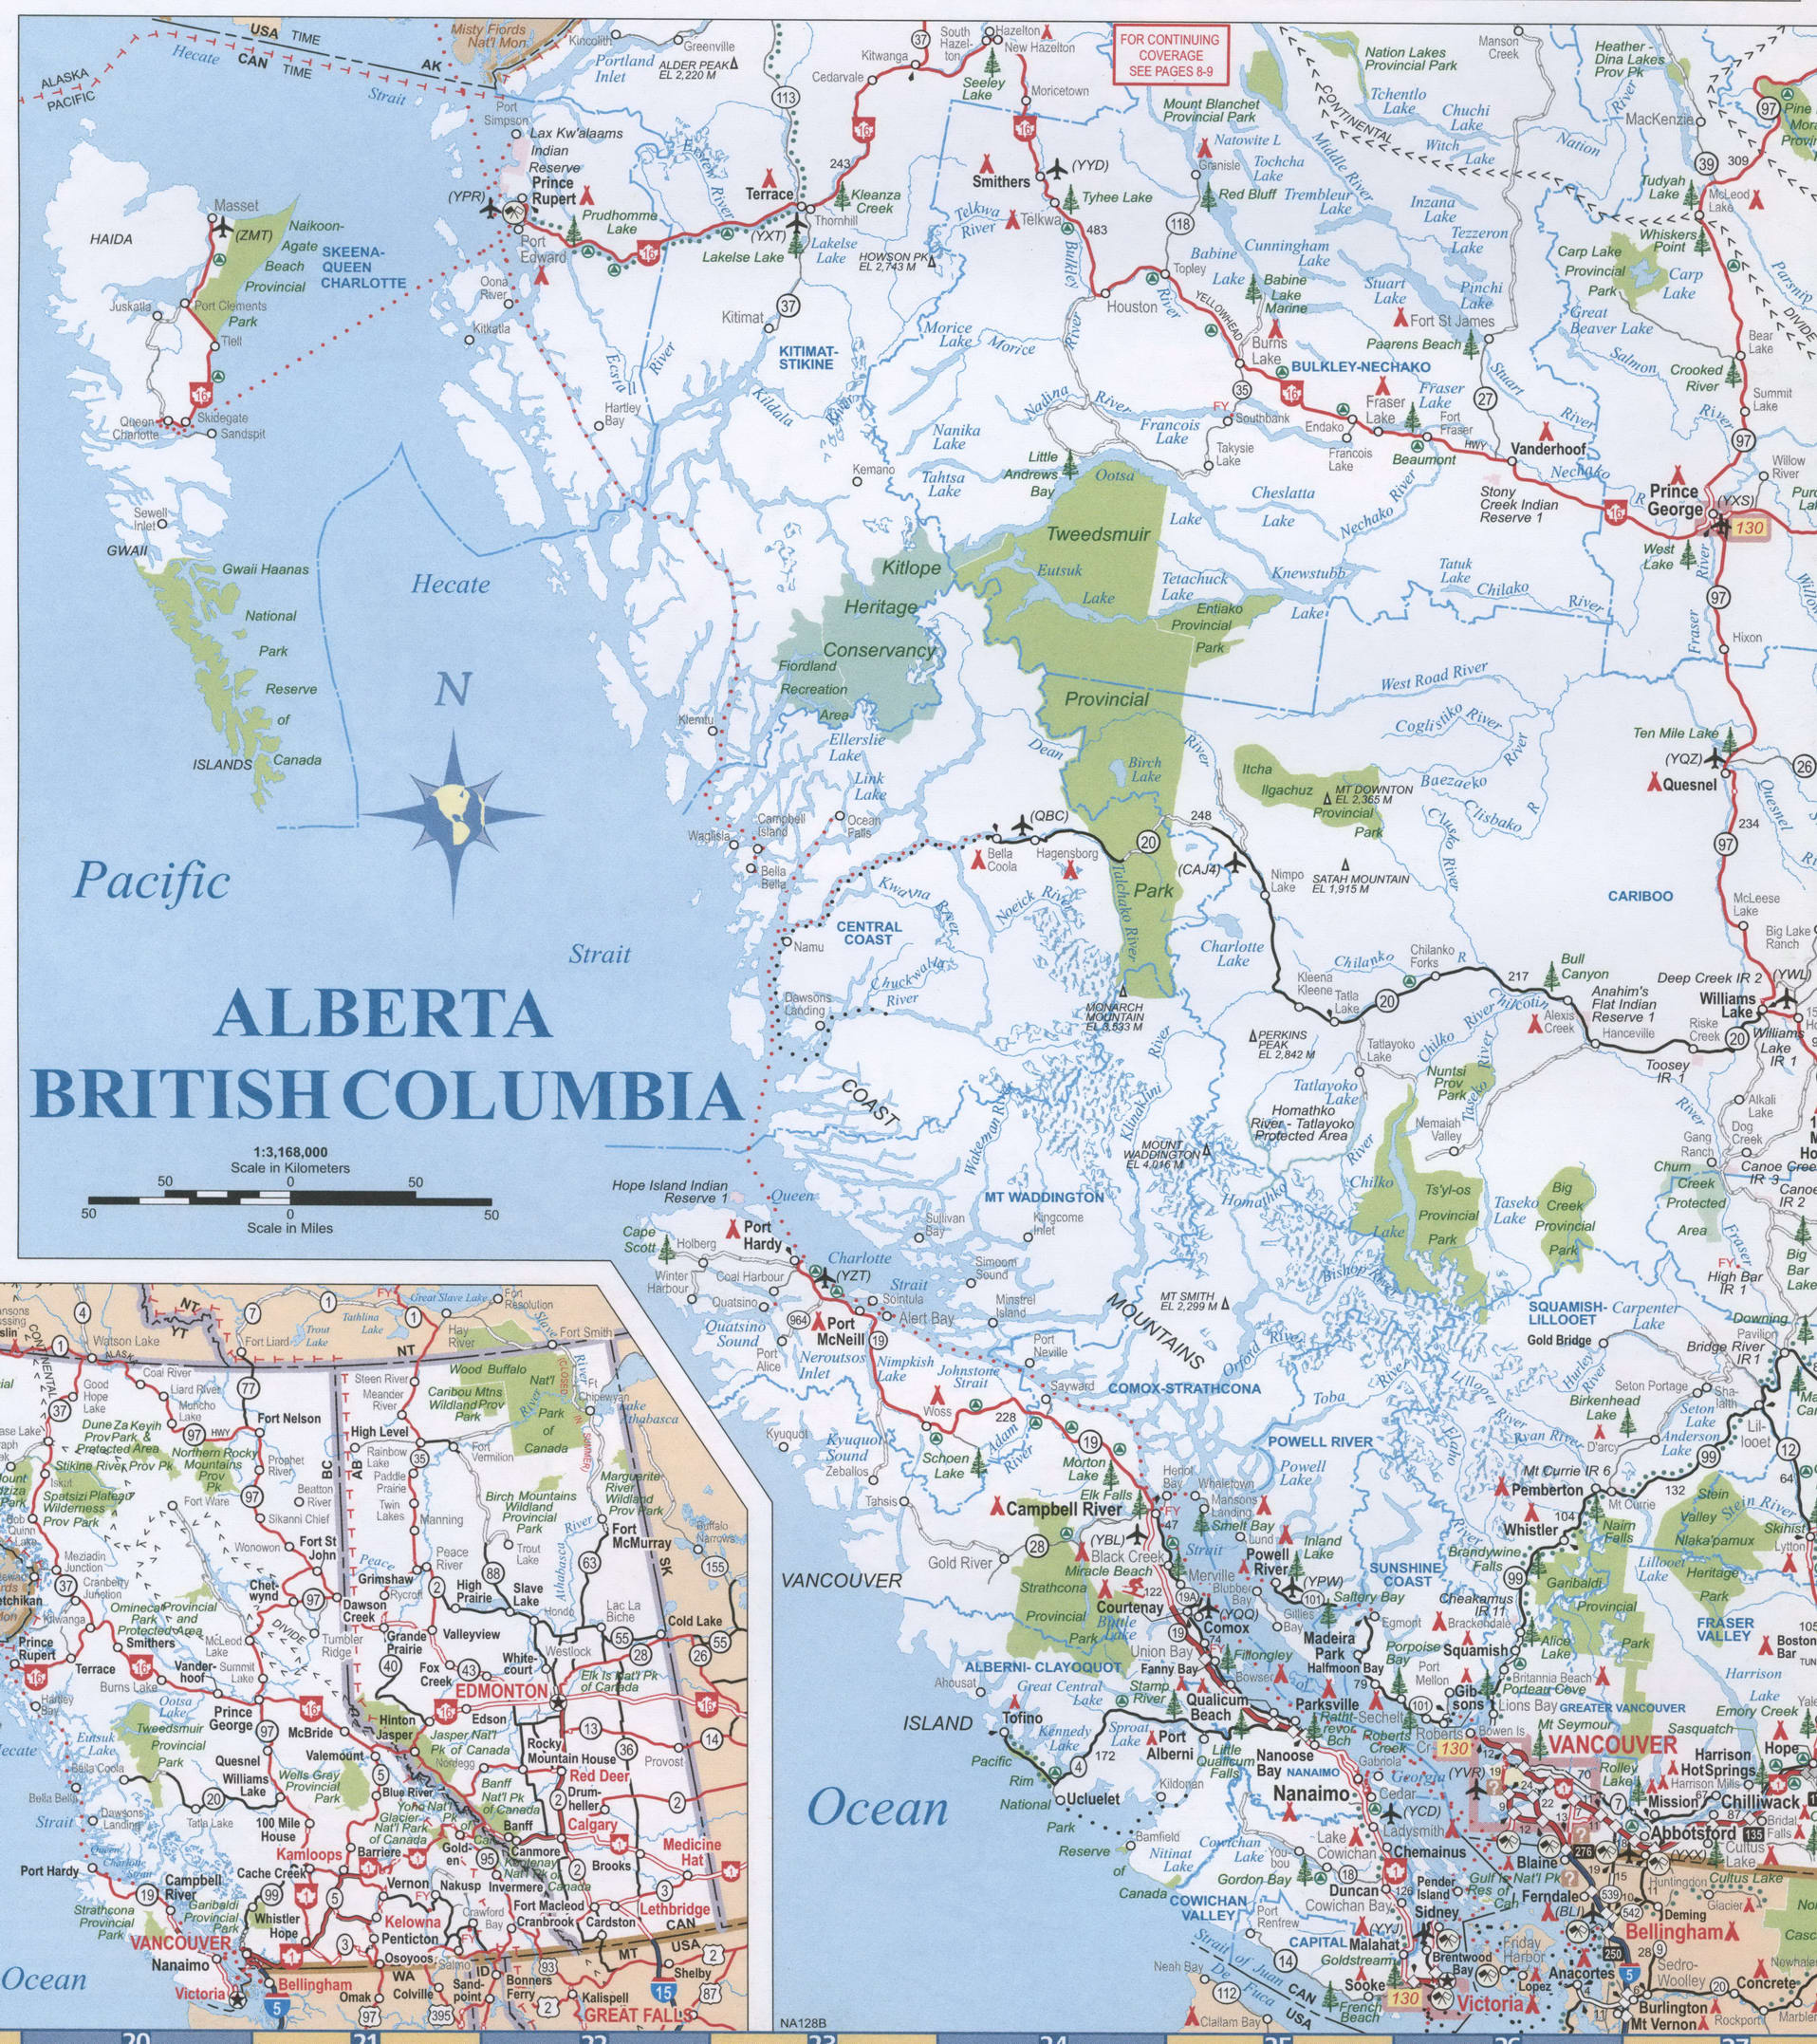 British Columbia And Alberta Maphighways Road Map Of British Columbia